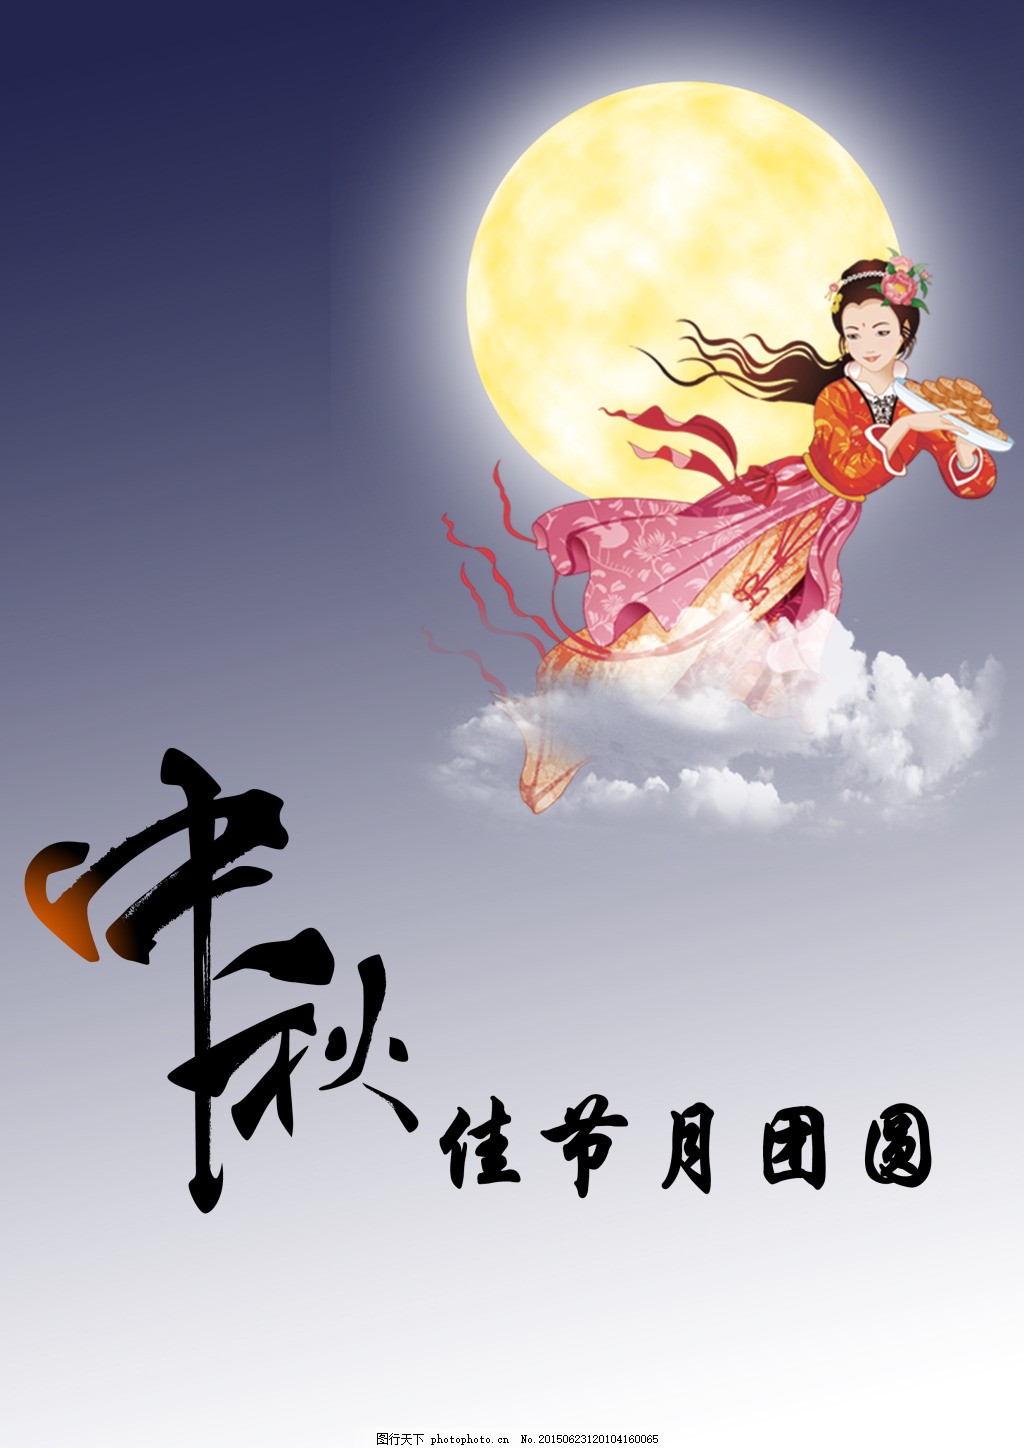 中秋节节日psd素材 嫦娥奔月 月饼 广告素材 艺术字 海报 节日素材